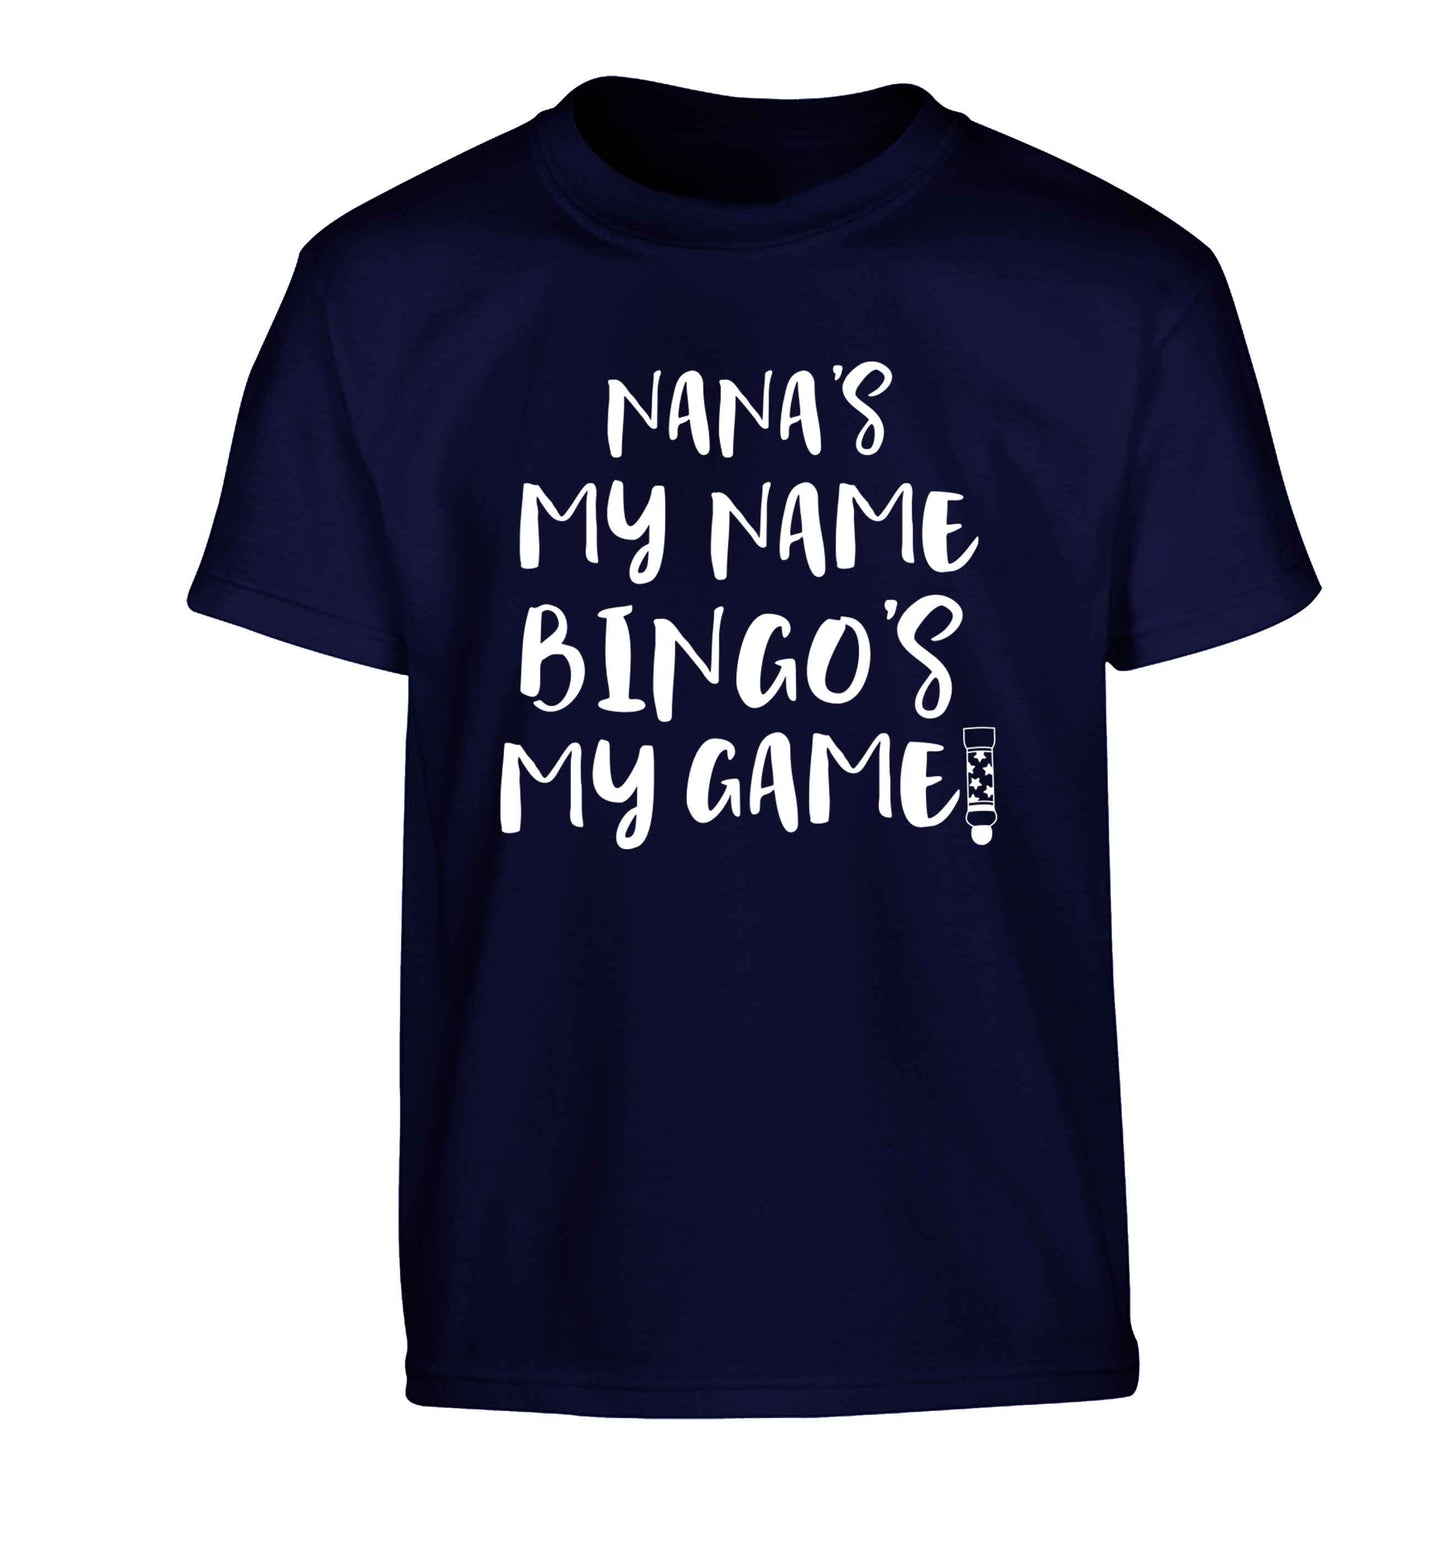 Nana's my name bingo's my game! Children's navy Tshirt 12-13 Years